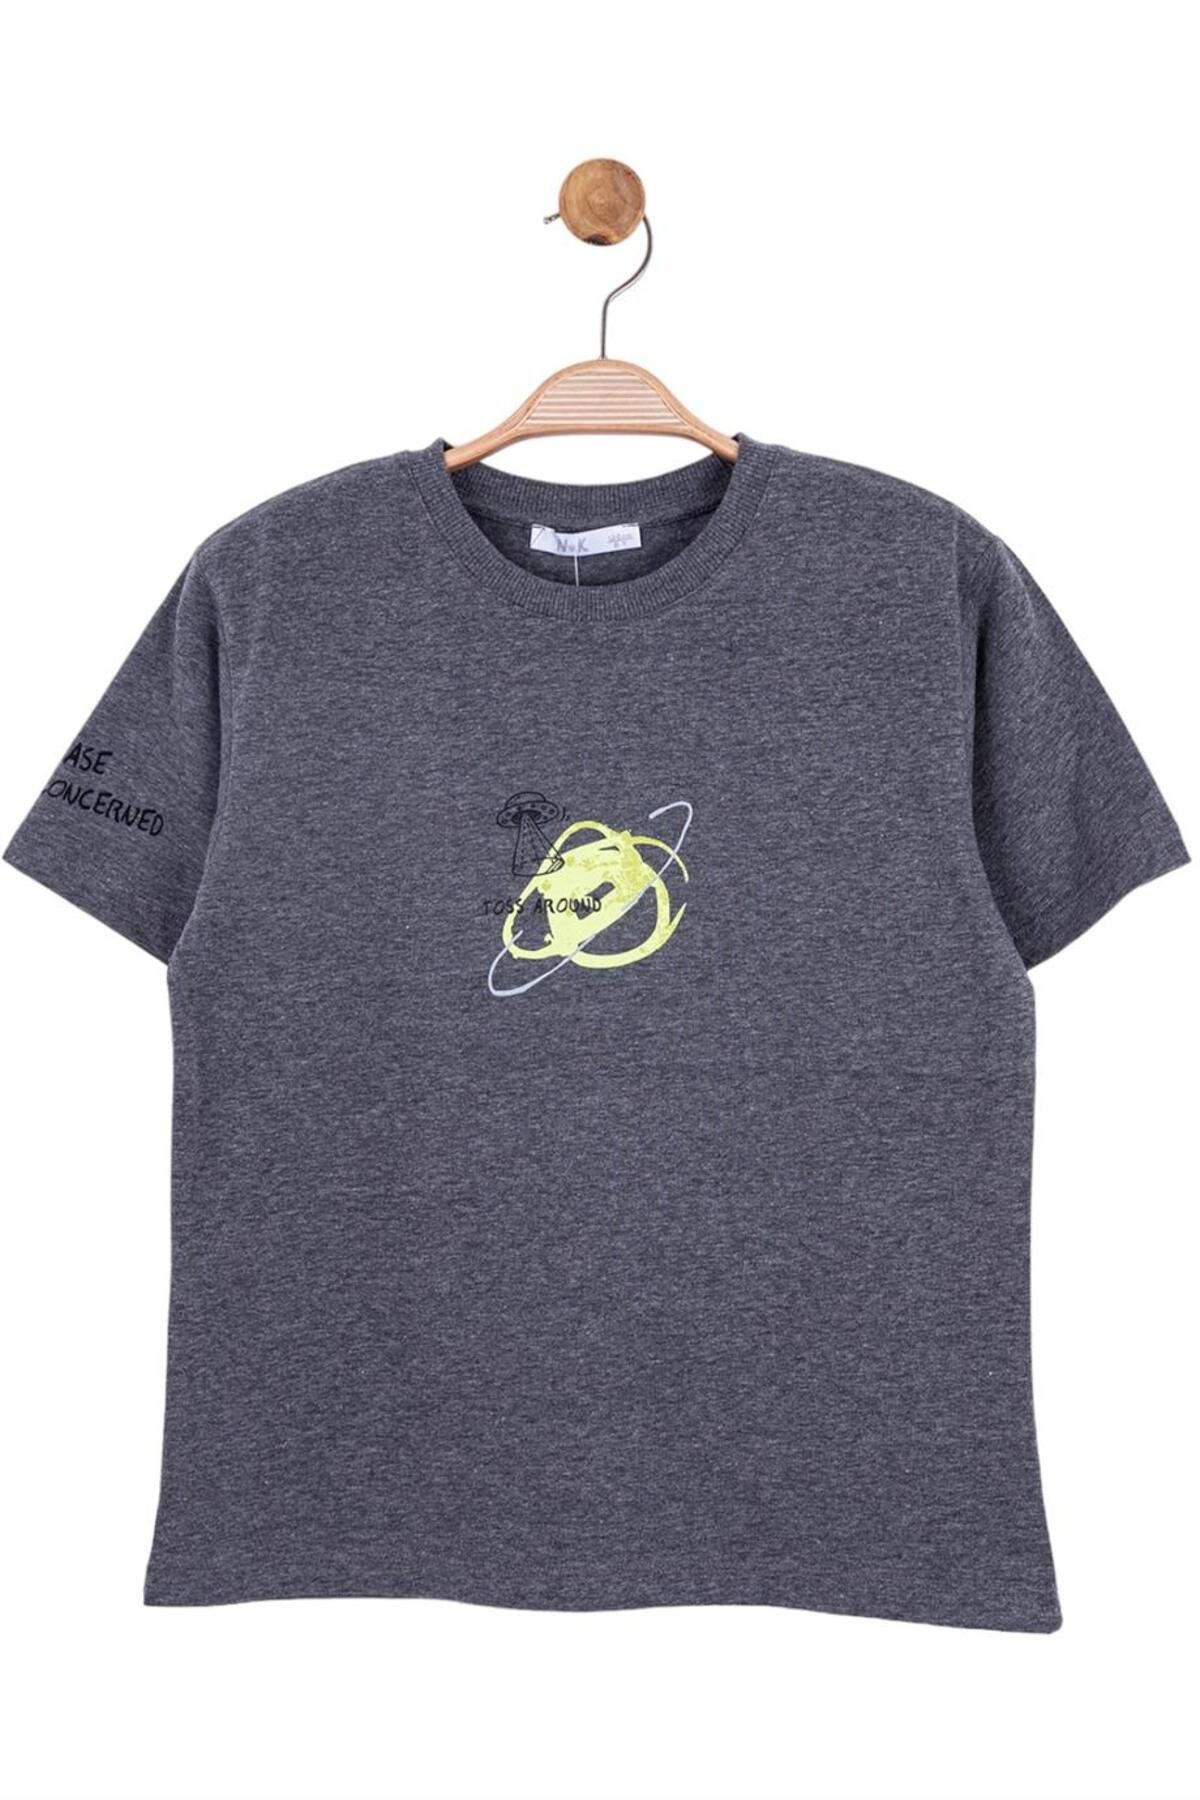 Nk Kids Erkek Çocuk Uzaylı Ön Ve Arka Baskılı Kısa Kol T-shirt 44366 Antrasit